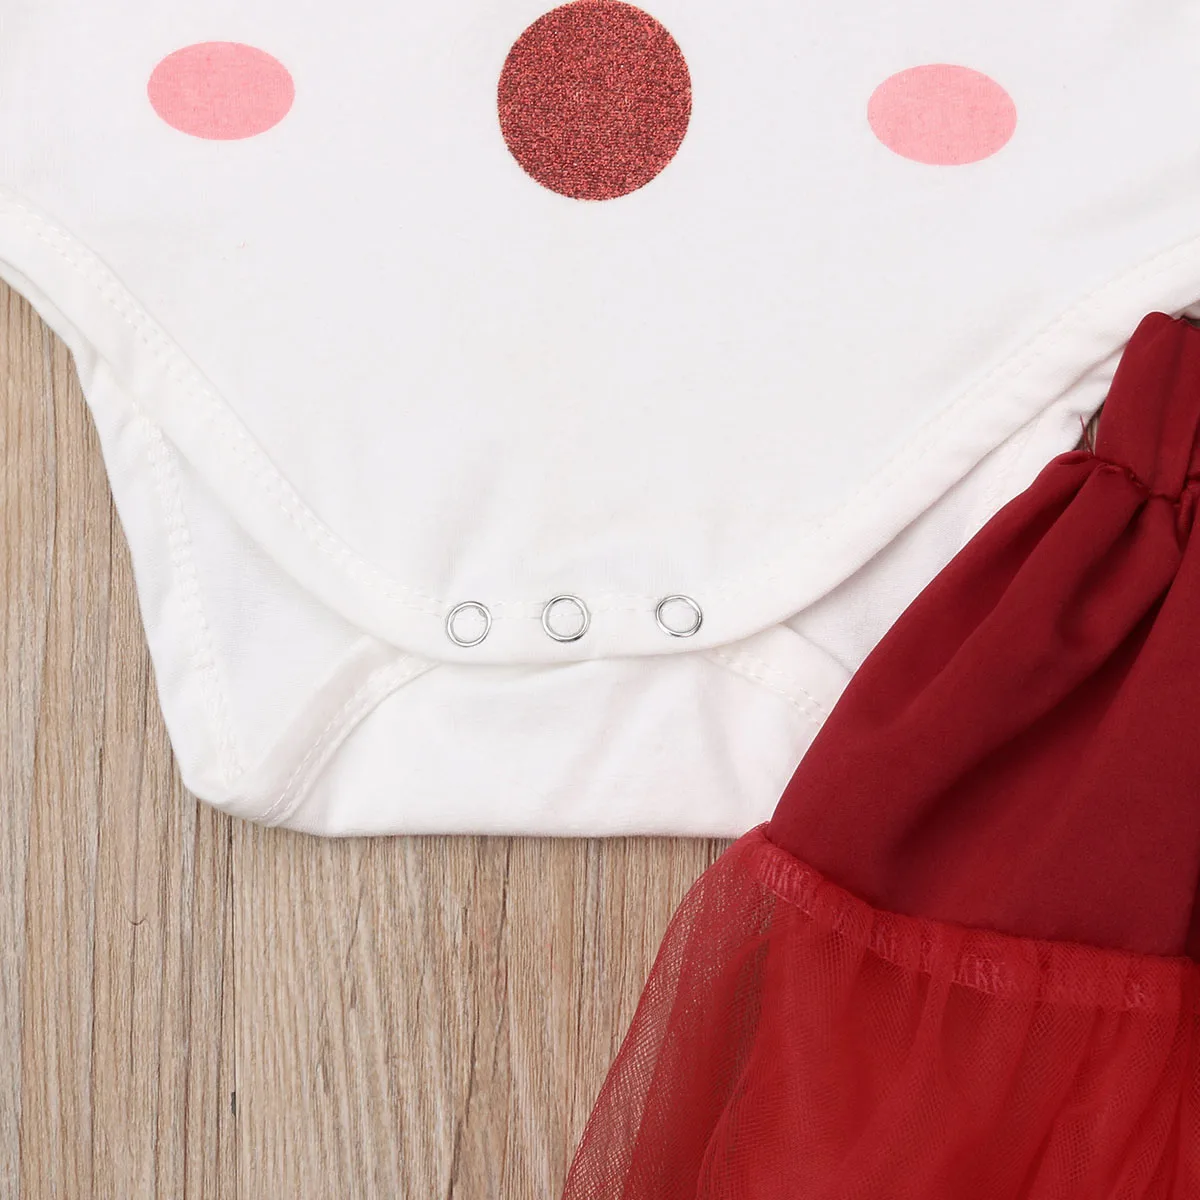 Комбинезон с короткими рукавами для новорожденных девочек 0-2 лет+ юбка-пачка нарядное платье принцессы